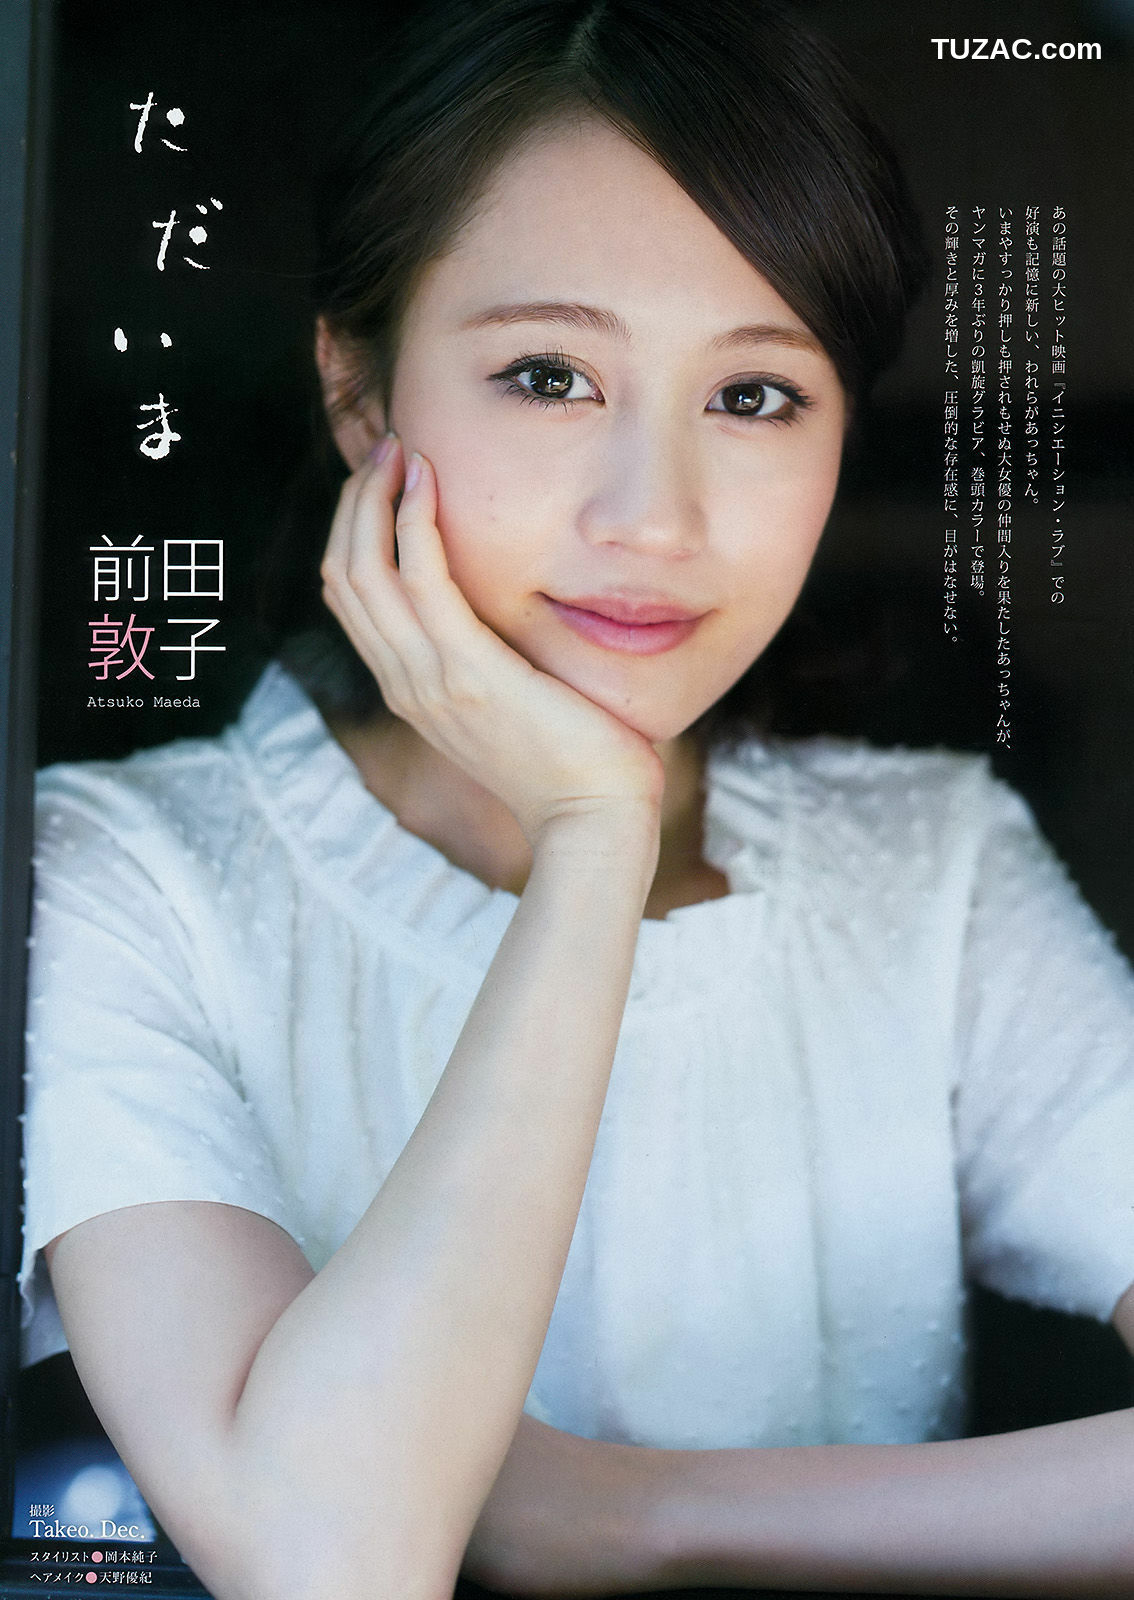 Young Magazine杂志写真_ 前田敦子 小間千代 2015年No.34 写真杂志[12P]